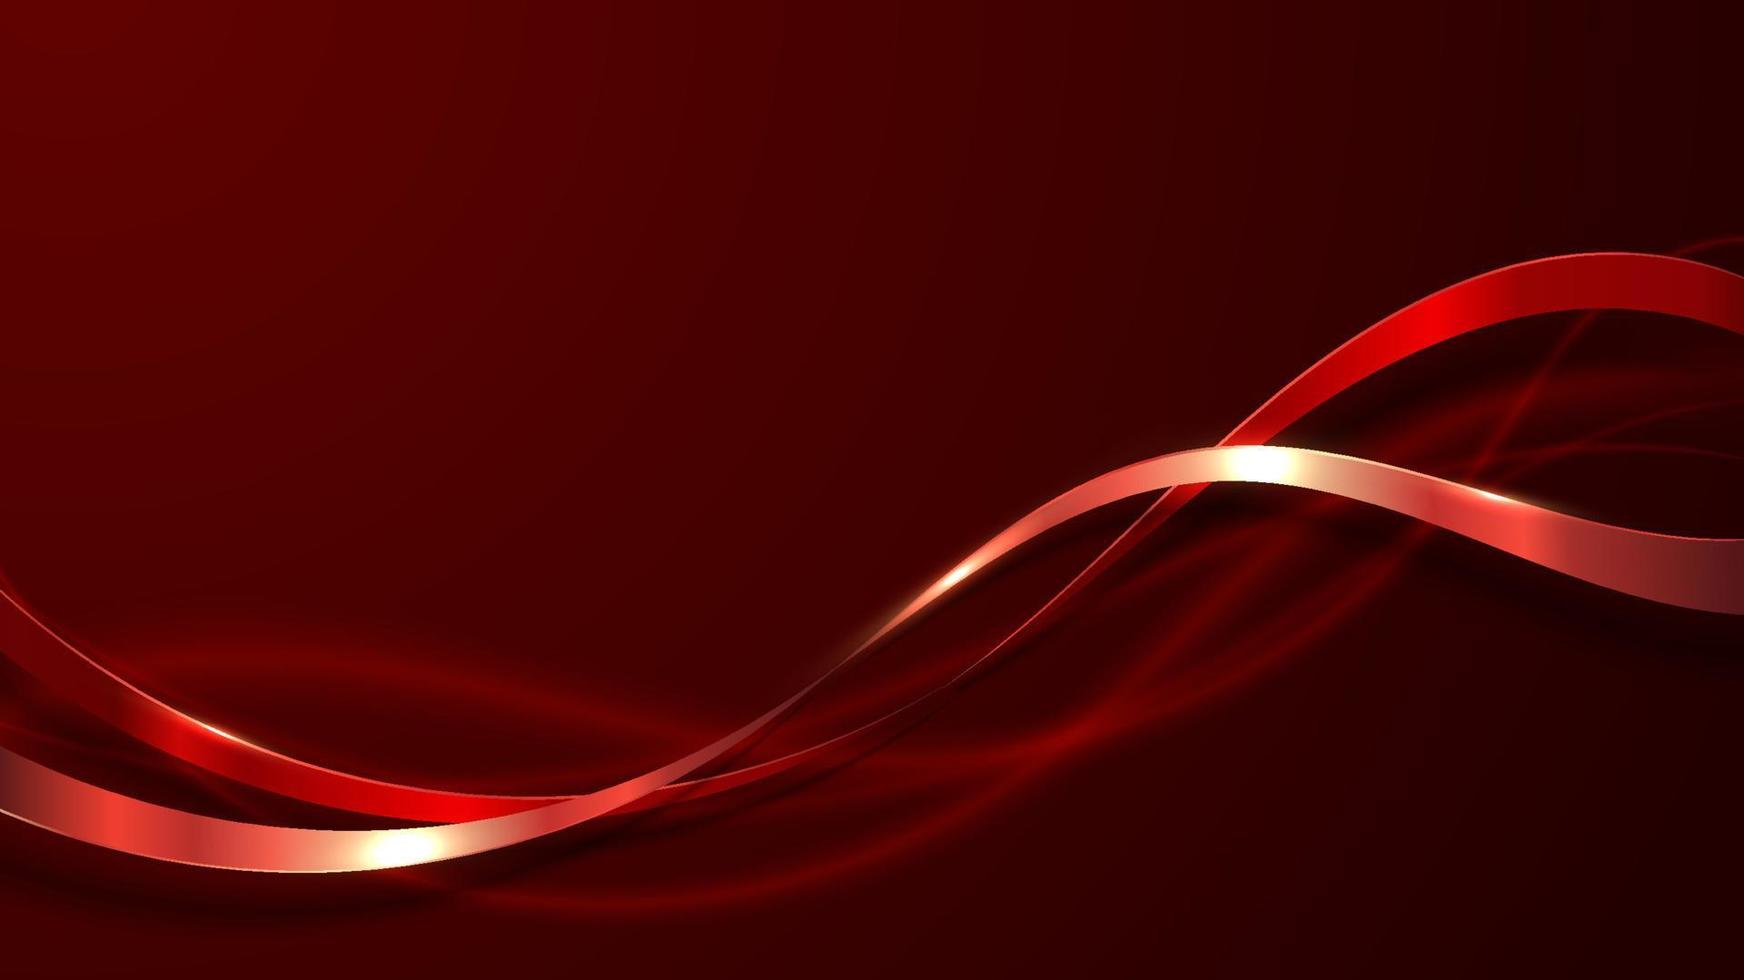 abstrakte elegante 3D-Luxus-rote Farbband-Wellenlinie Dekoration und Glitzerbeleuchtung auf rotem Hintergrund mit Farbverlauf vektor